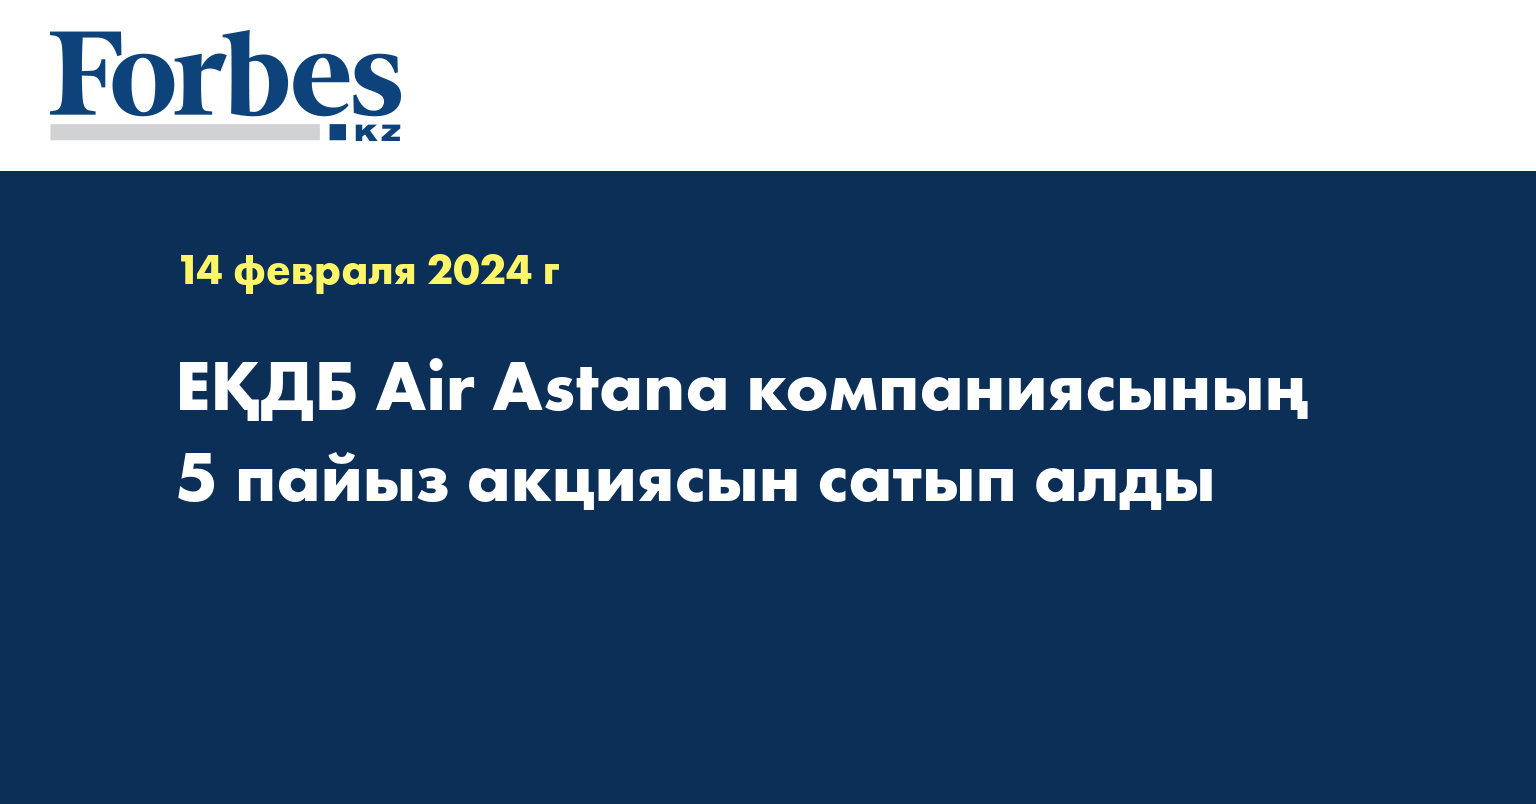  ЕҚДБ Air Astana компаниясының 5 пайыз акциясын сатып алды